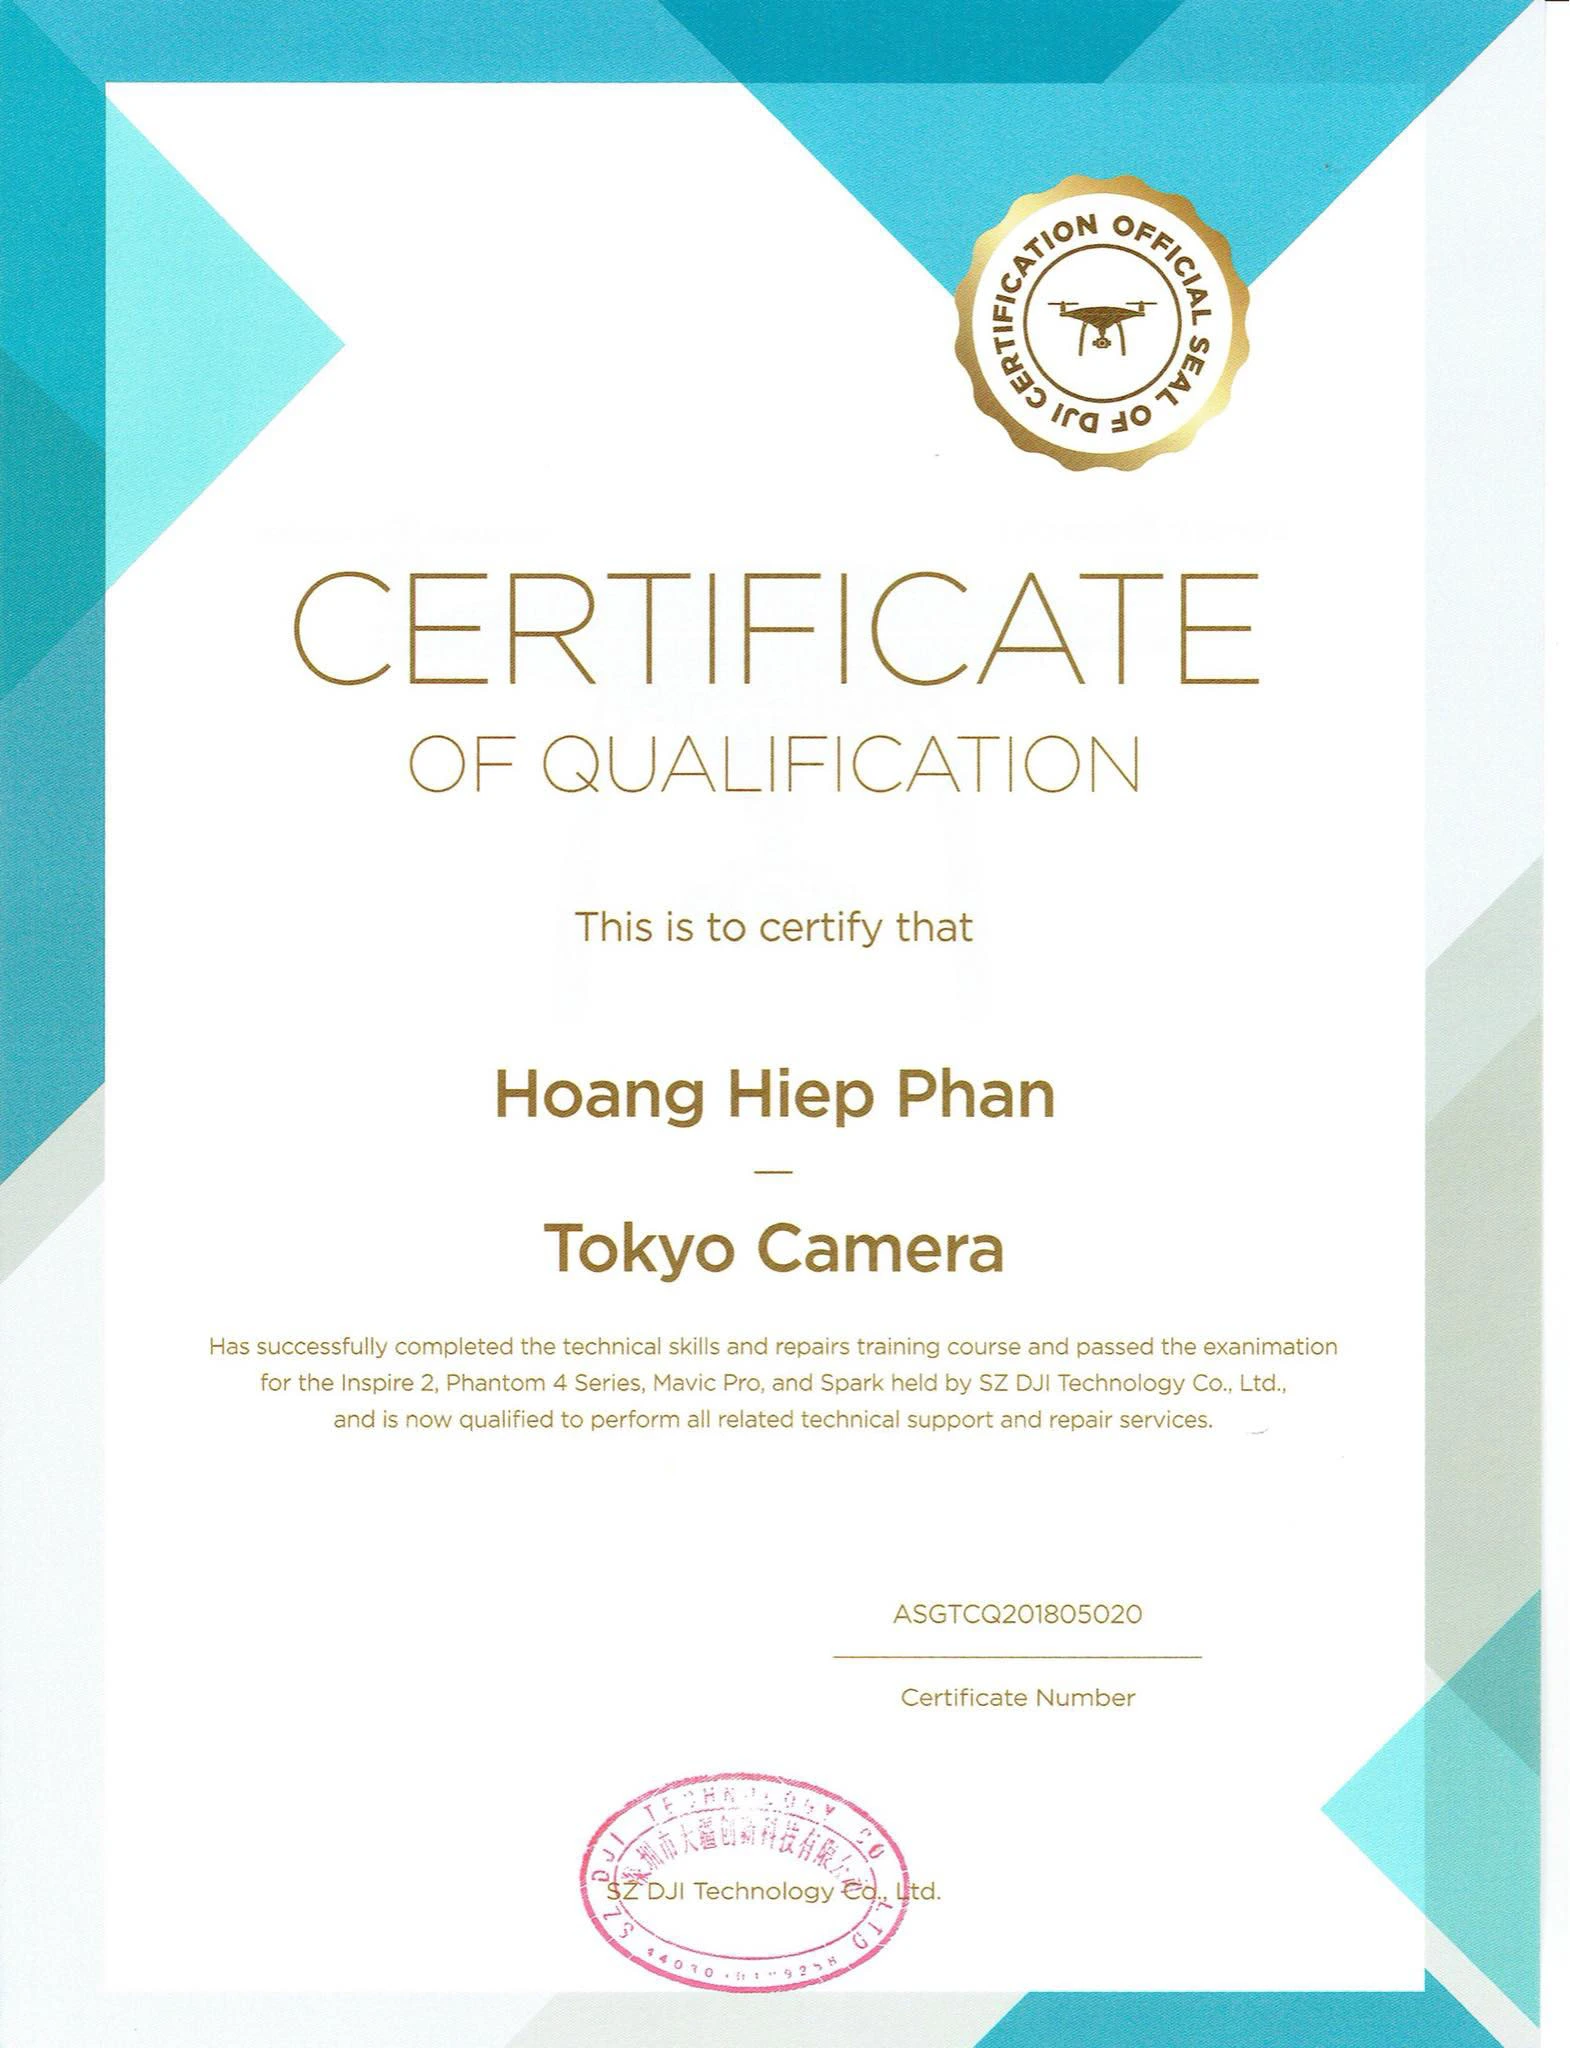 Certificate chứng nhận Tokyo Camera là đơn vị DUY NHẤT được ủy quyền bảo hành các sản phẩm DJI tại Việt Nam